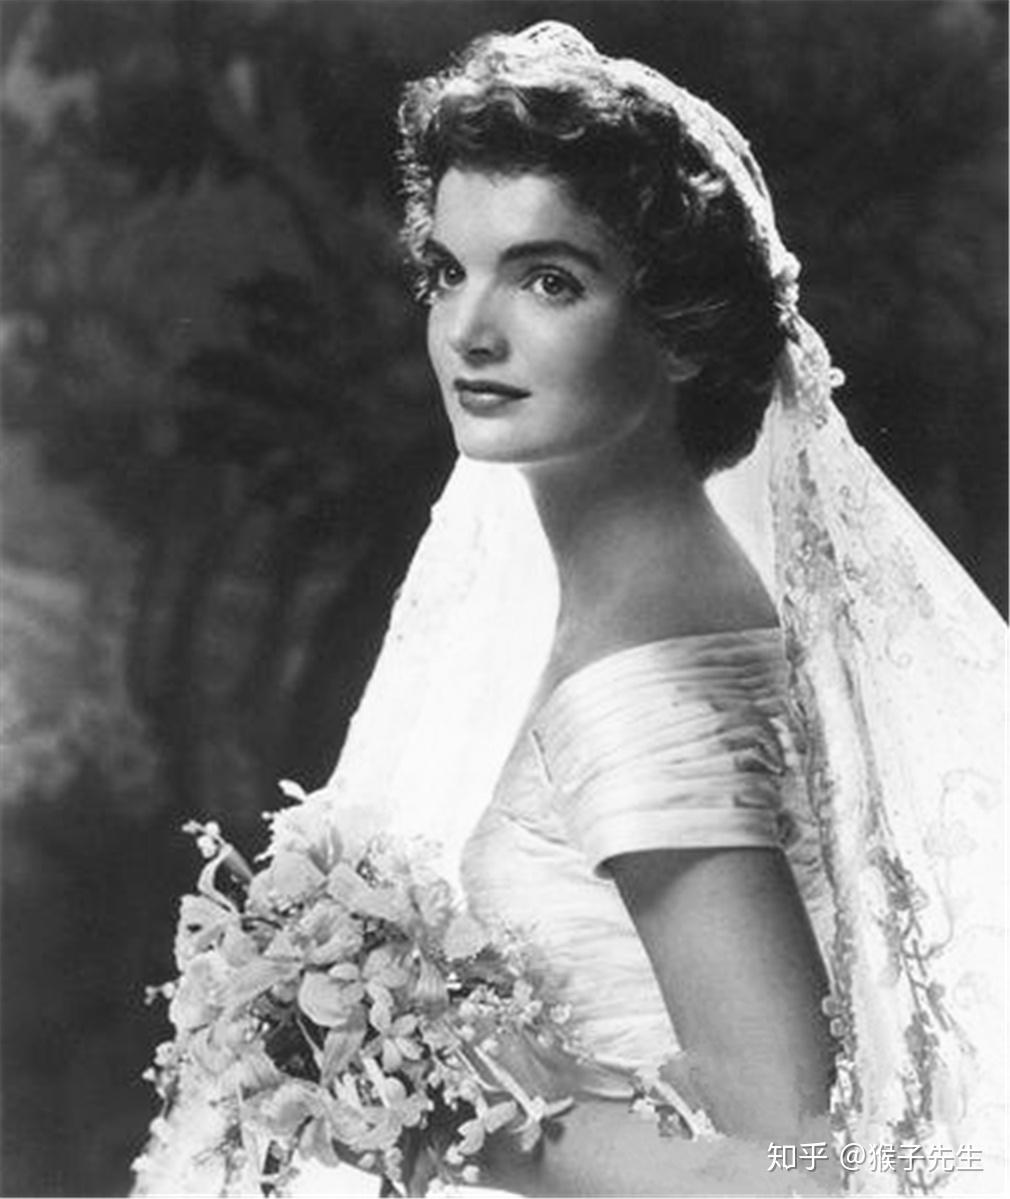 美国第35任总统肯尼迪的夫人竟然是美国人心中最美第一夫人